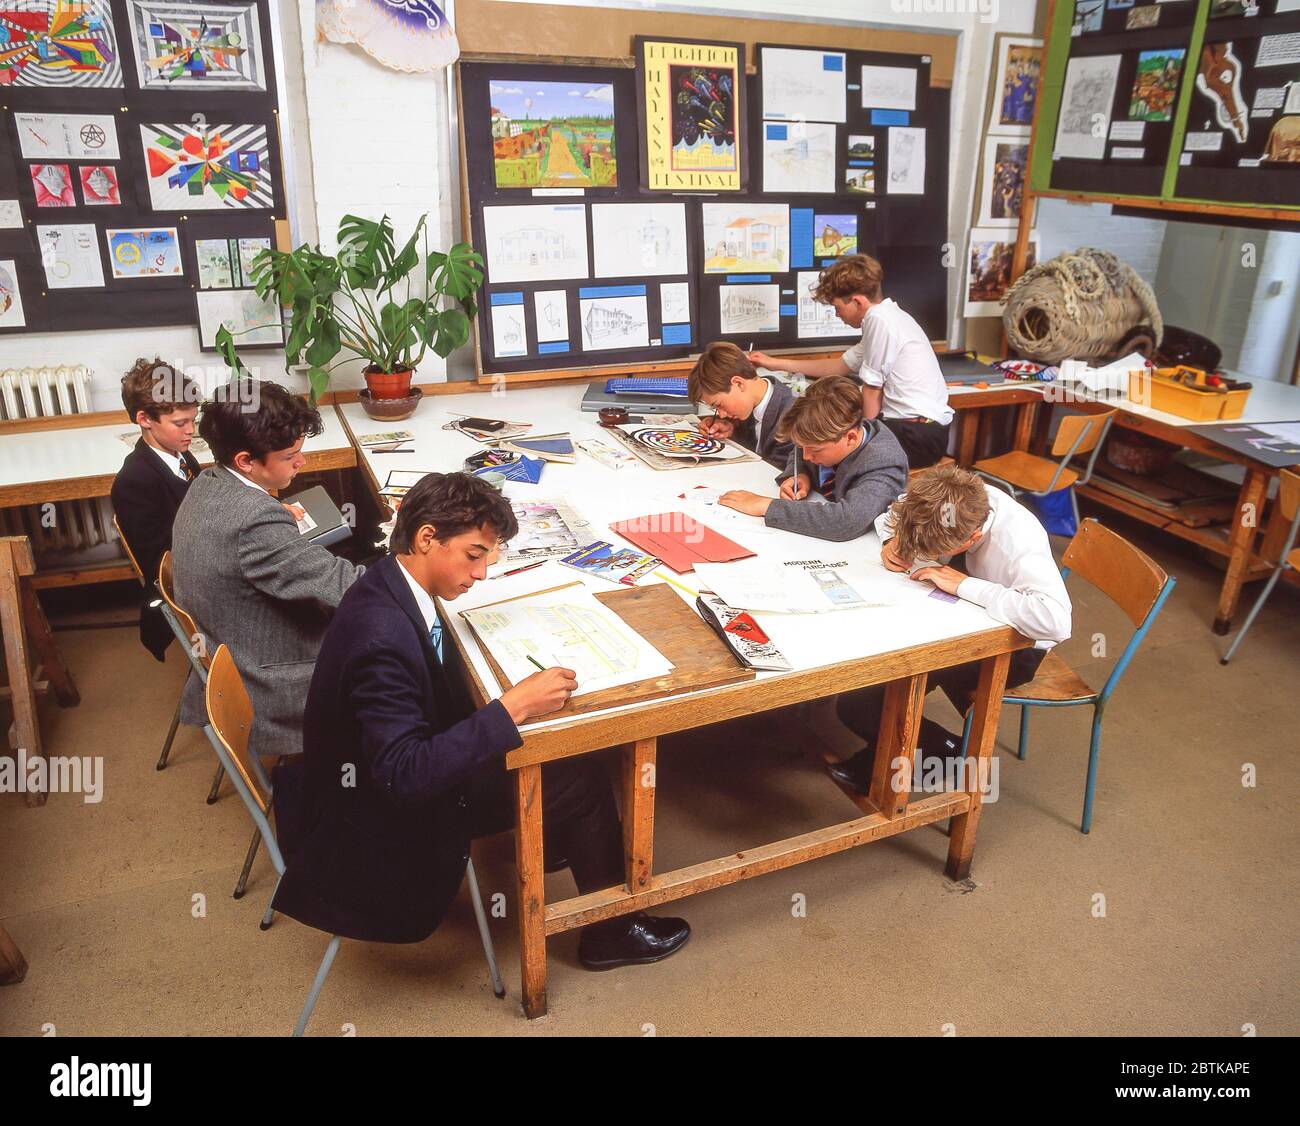 Studenten zeichnen in der Kunstklasse, Surrey, England, Großbritannien Stockfoto